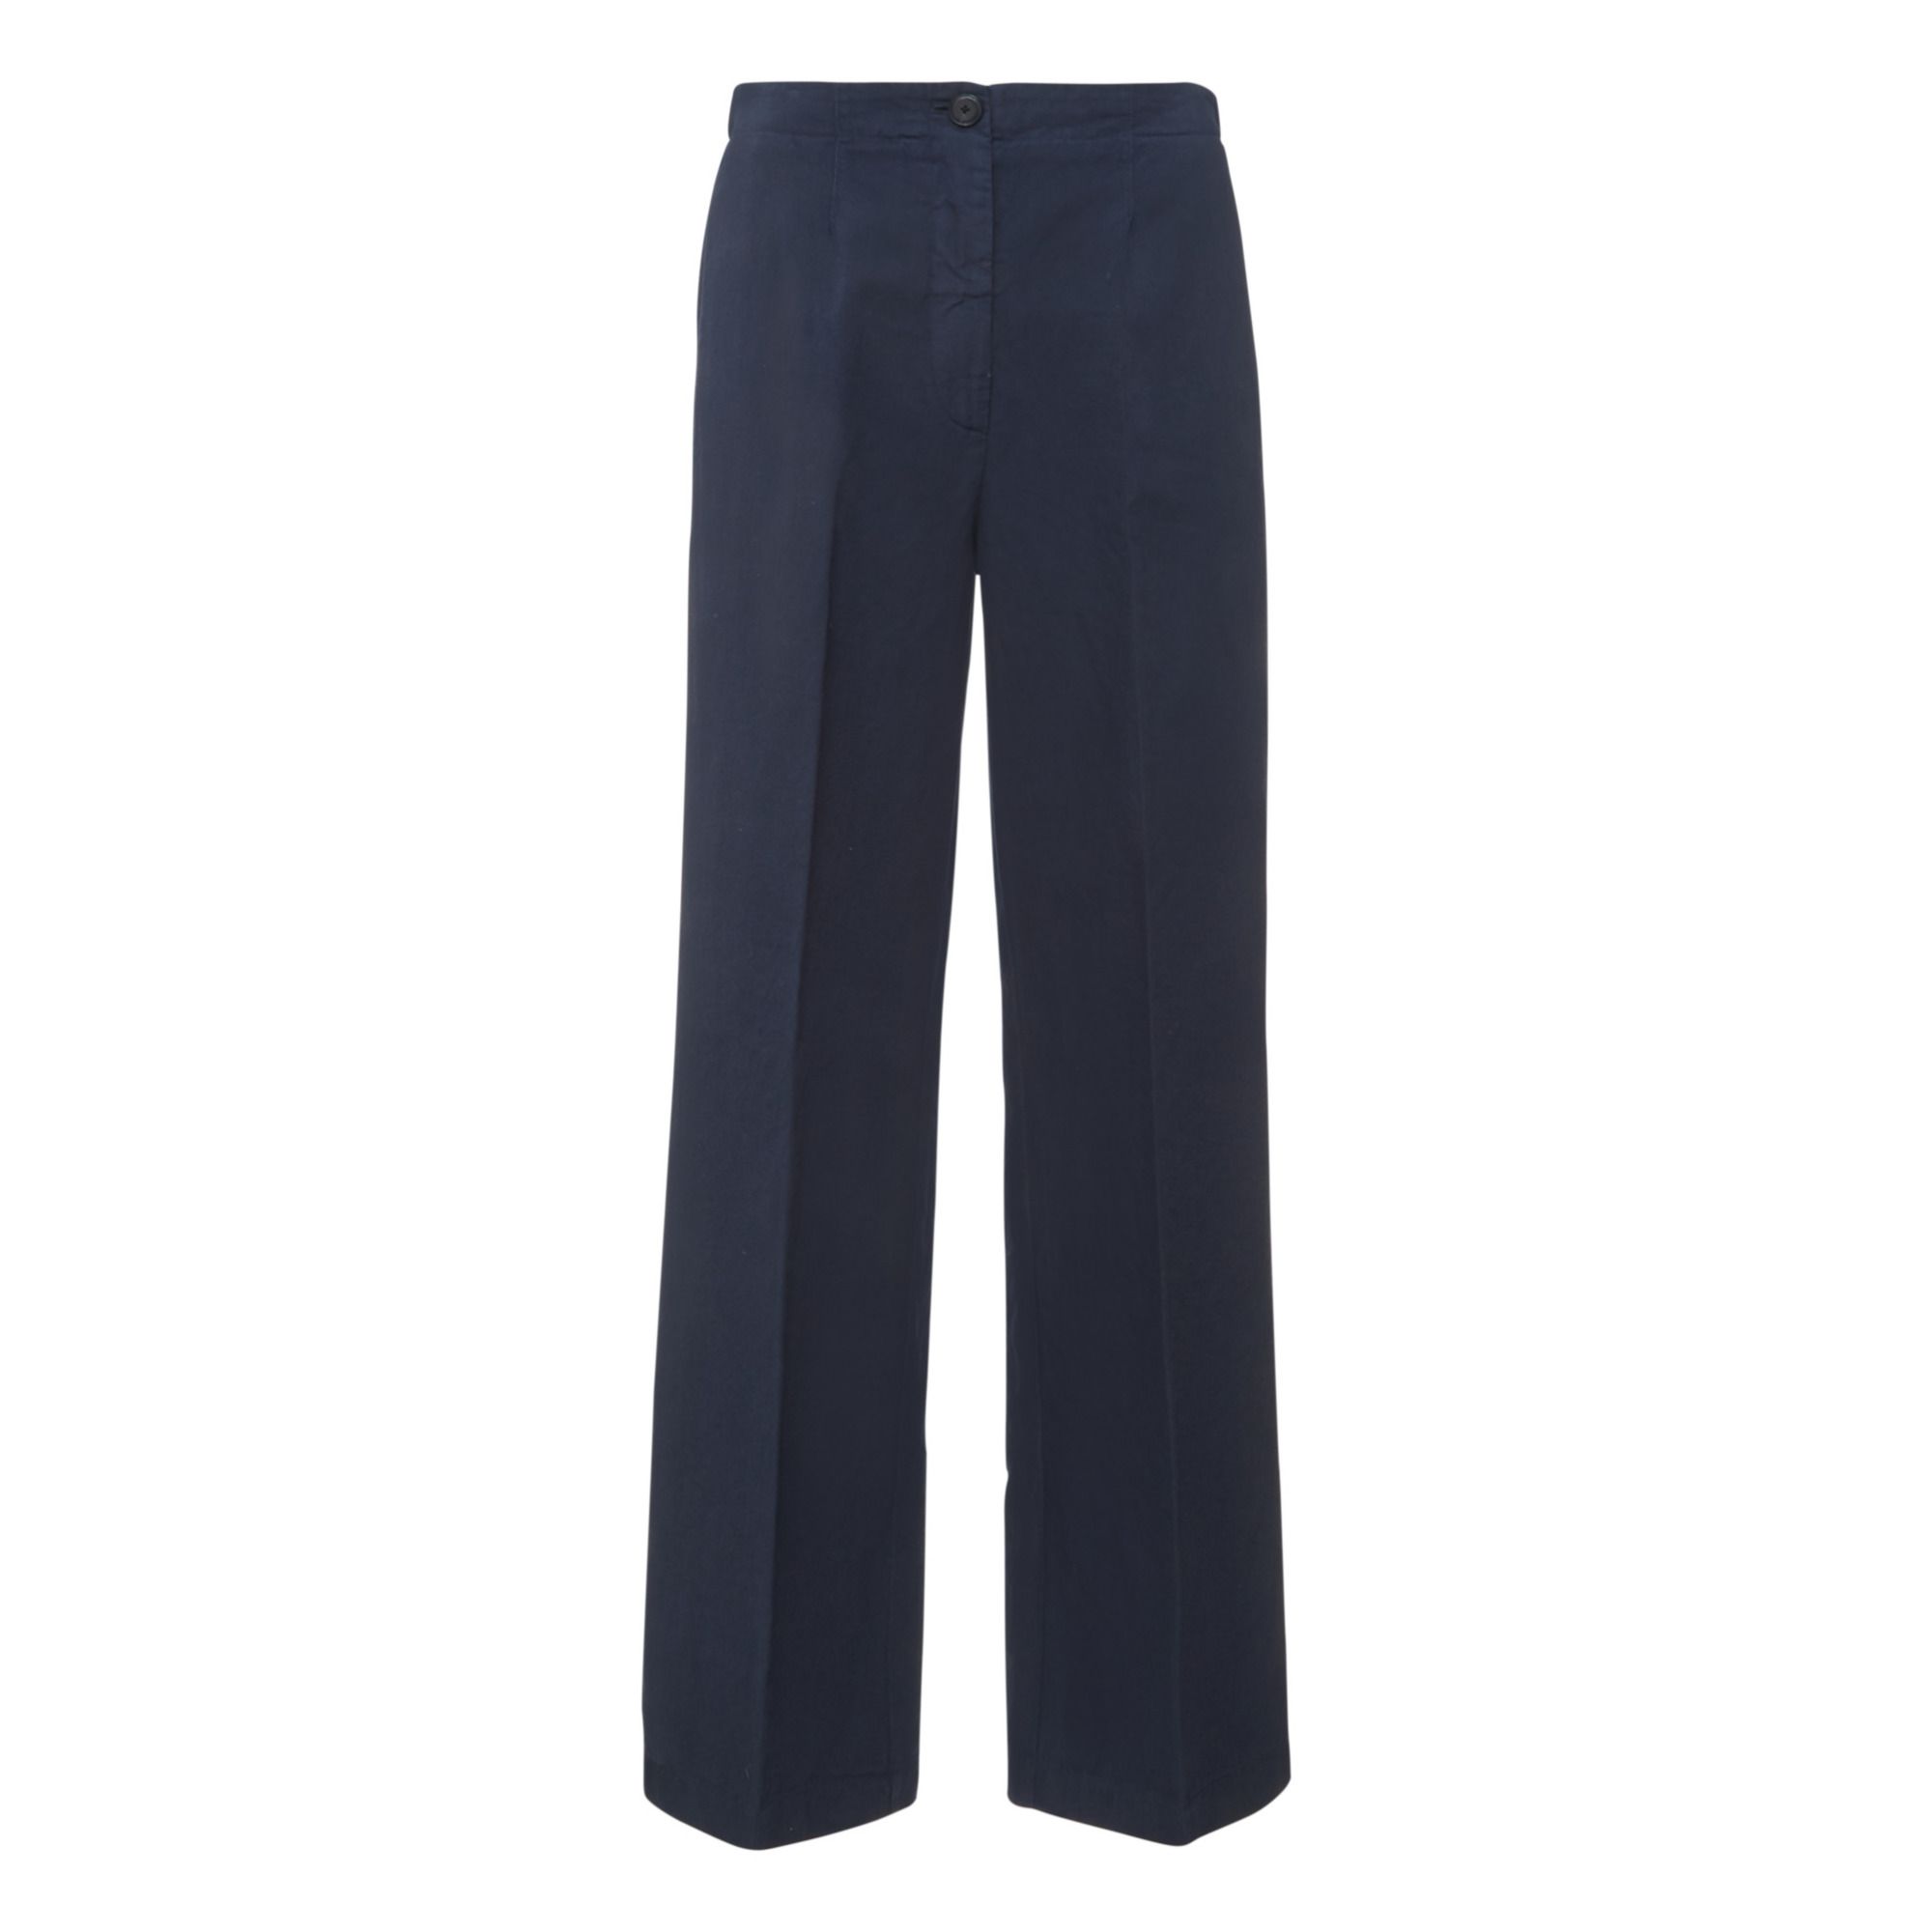 Pomandère - Pantalon Droit Coton et Lin - Femme - Bleu marine